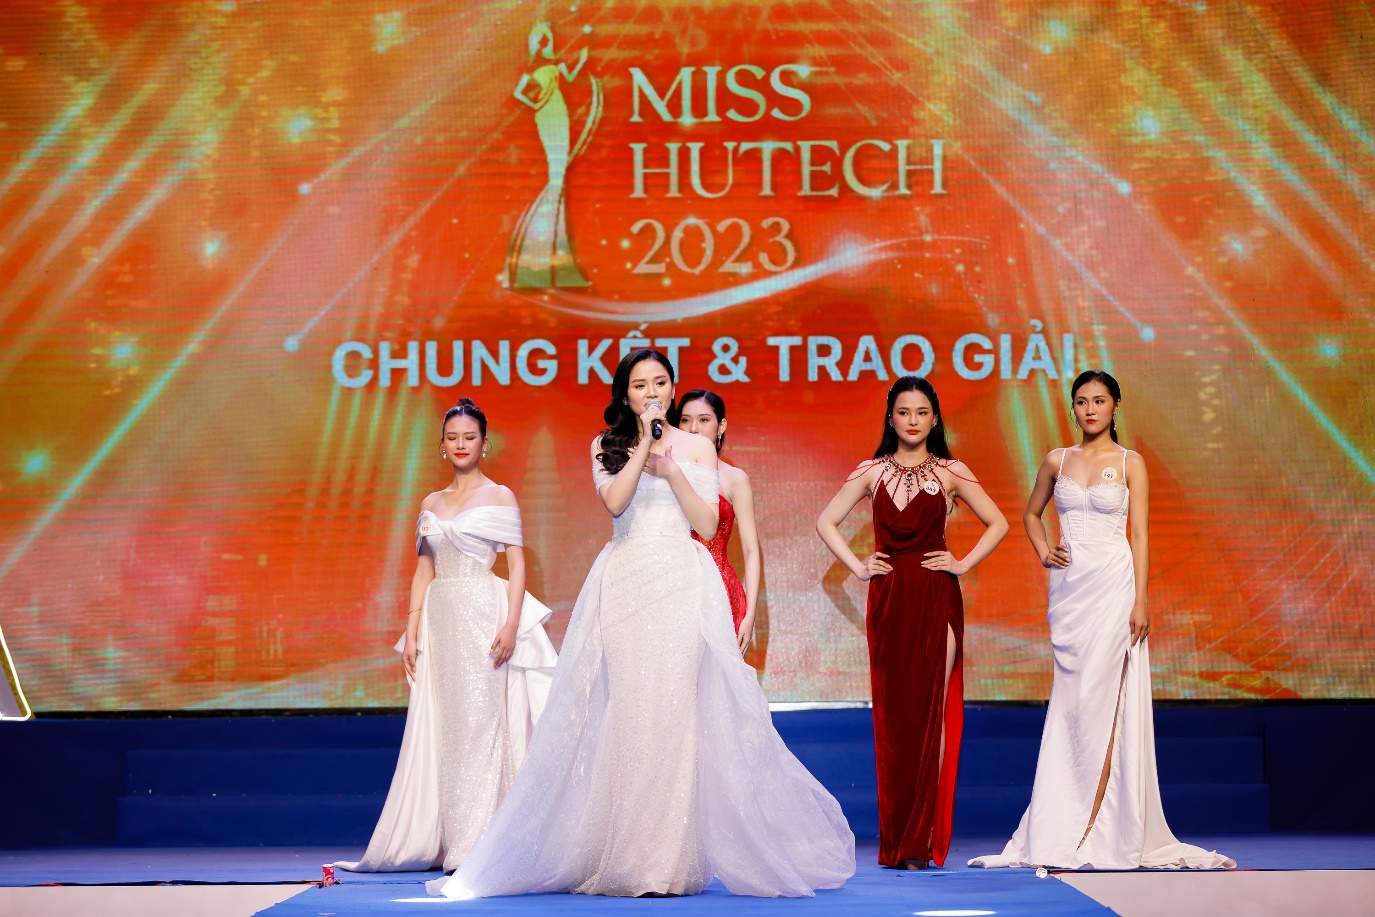 Hoa khôi Miss HUTECH 2023 Nguyễn Thị Tuyết Nhung dự định tham gia các cuộc thi sắc đẹp lớn hơn trong năm nay - Ảnh 3.